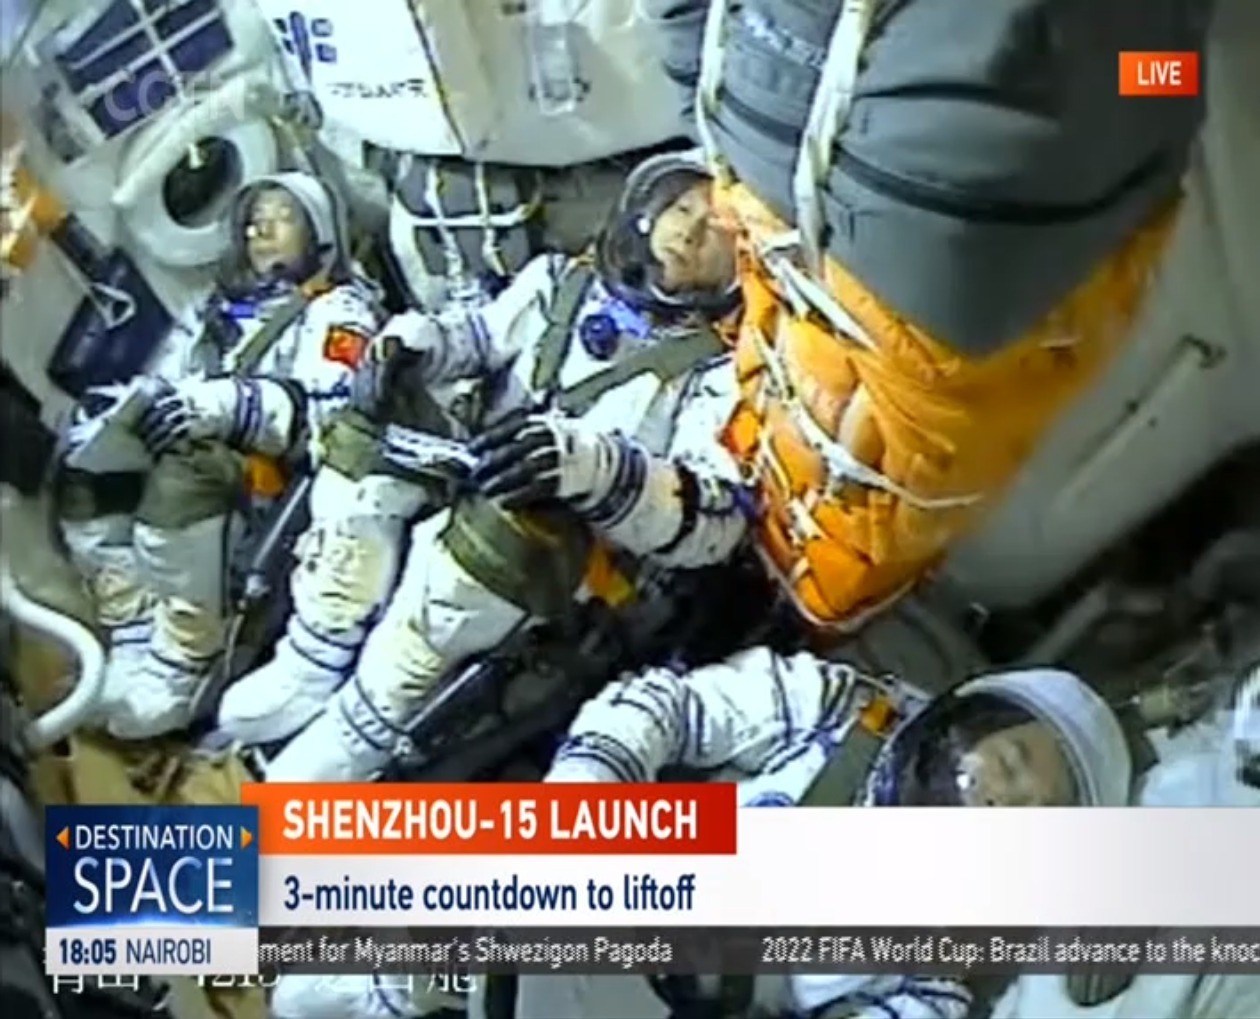 China escolheu equipe de astronautas mais antiga e experiente para administrar a estação espacial  — Foto: Reprodução/CGTN